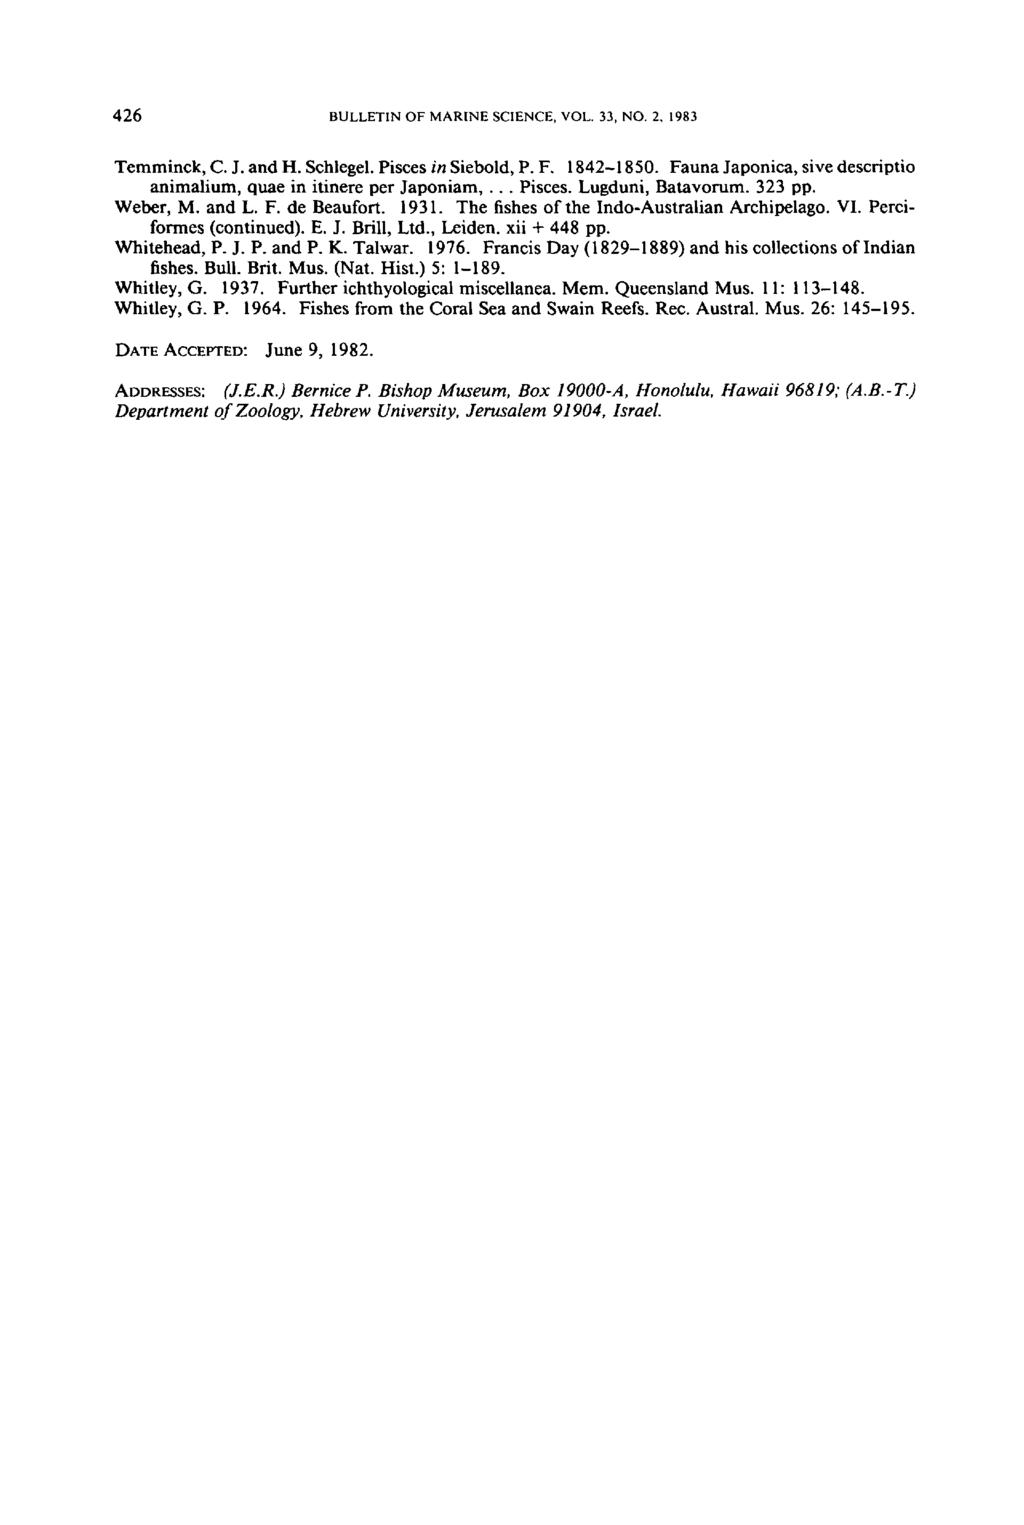 426 BULLETINOFMARINESCIENCE,VOL.33, NO.2. 1983 Temminck, C. J. and H. Schlegel. Pisces in Siebold, P. F. 1842-1850. Fauna Japonica, sive descriptio animalium, quae in itinere per Japoniam,... Pisces. Lugduni, Batavorum.